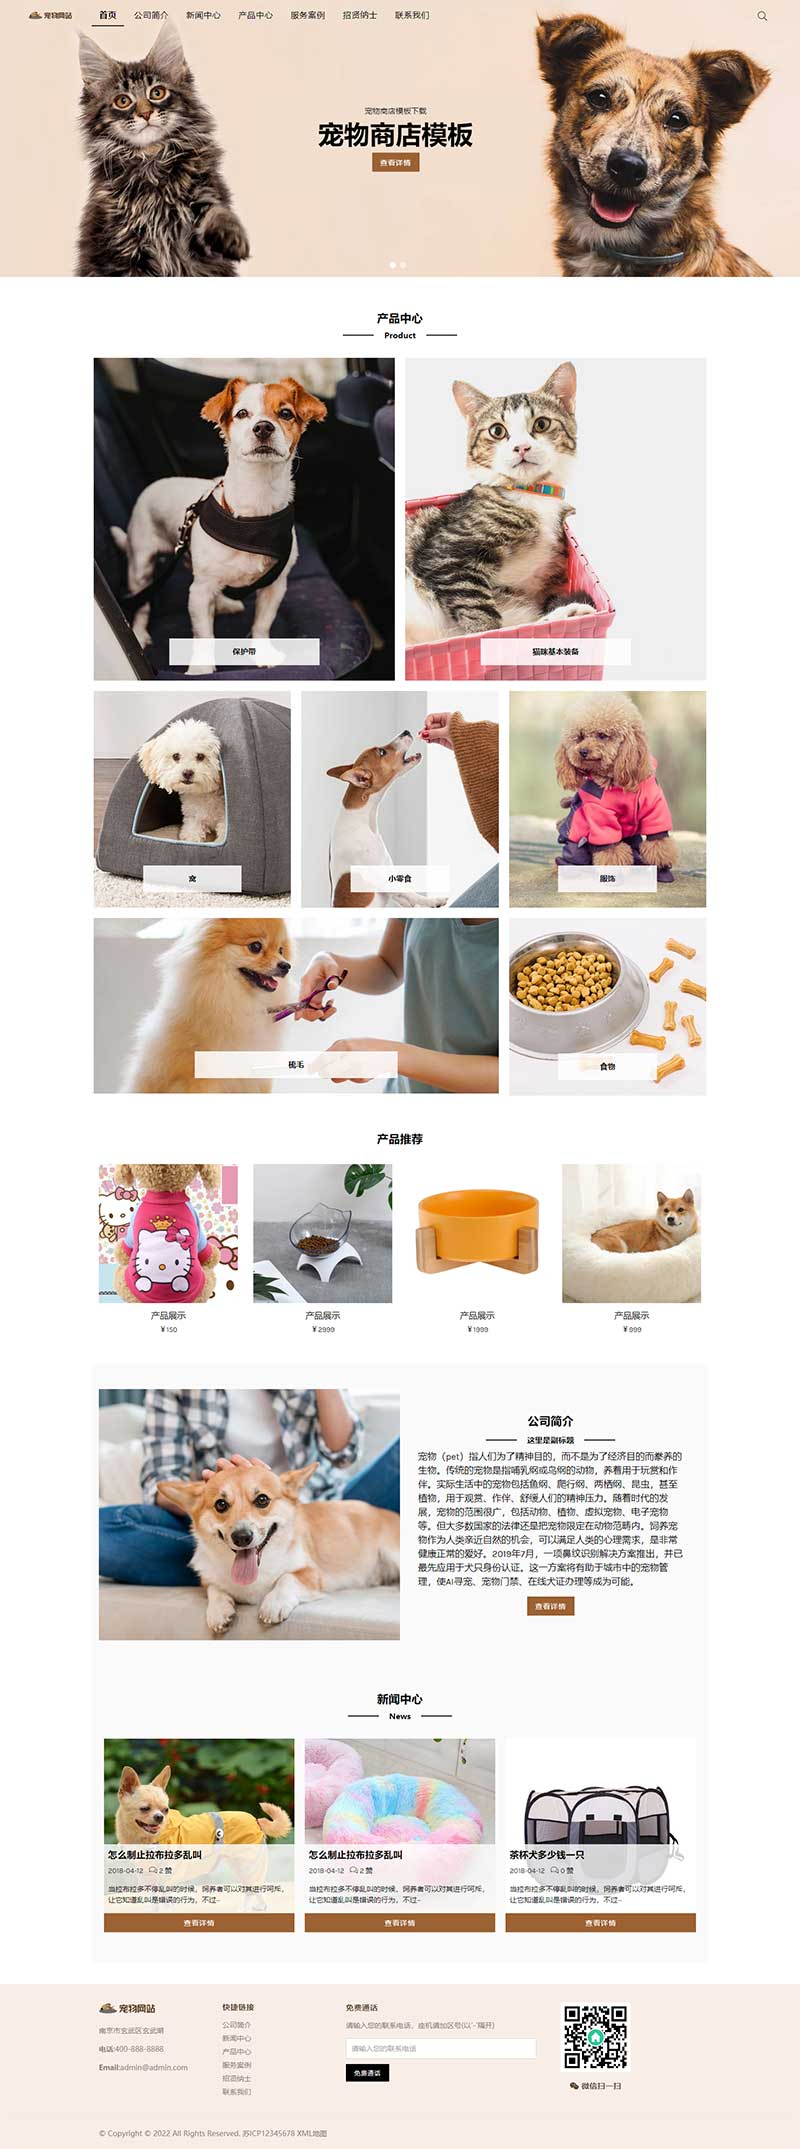 宠物商店宠物装备类宠物网站模板(自适应手机端)-1